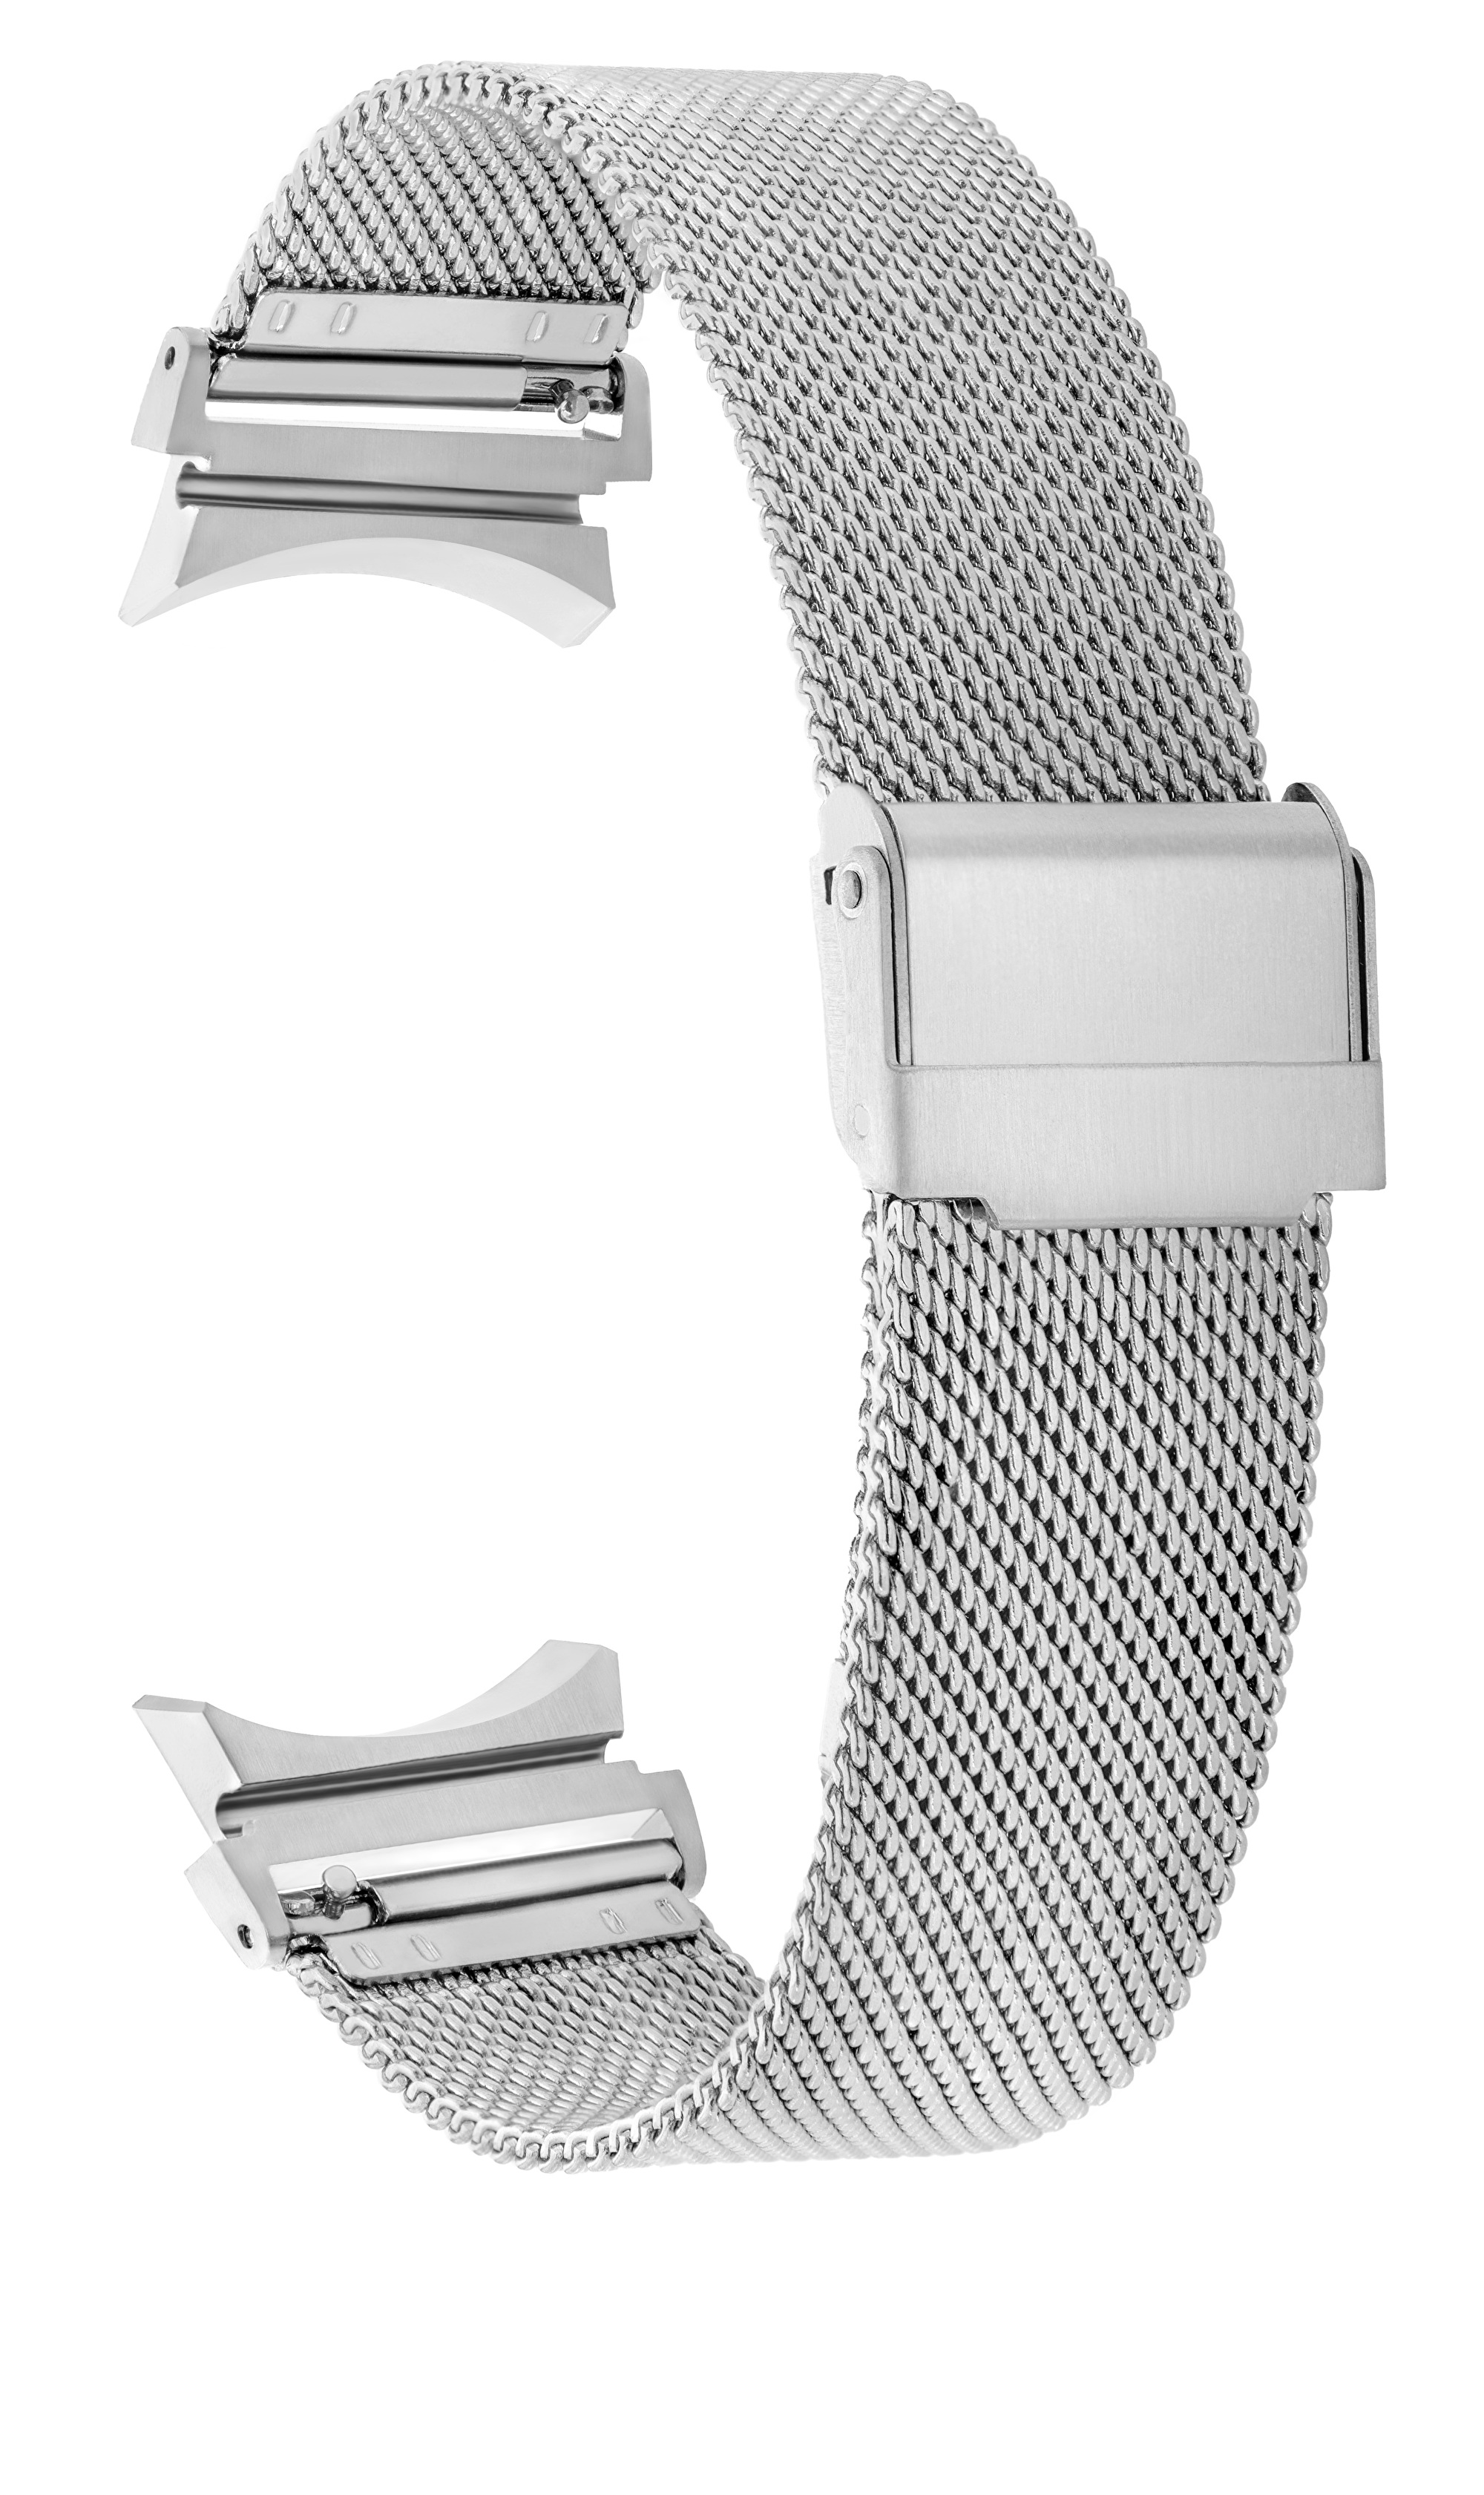 4wrist Milánský tah s klasickým zapínáním pro Samsung Galaxy Watch 6/5/4 - Silver